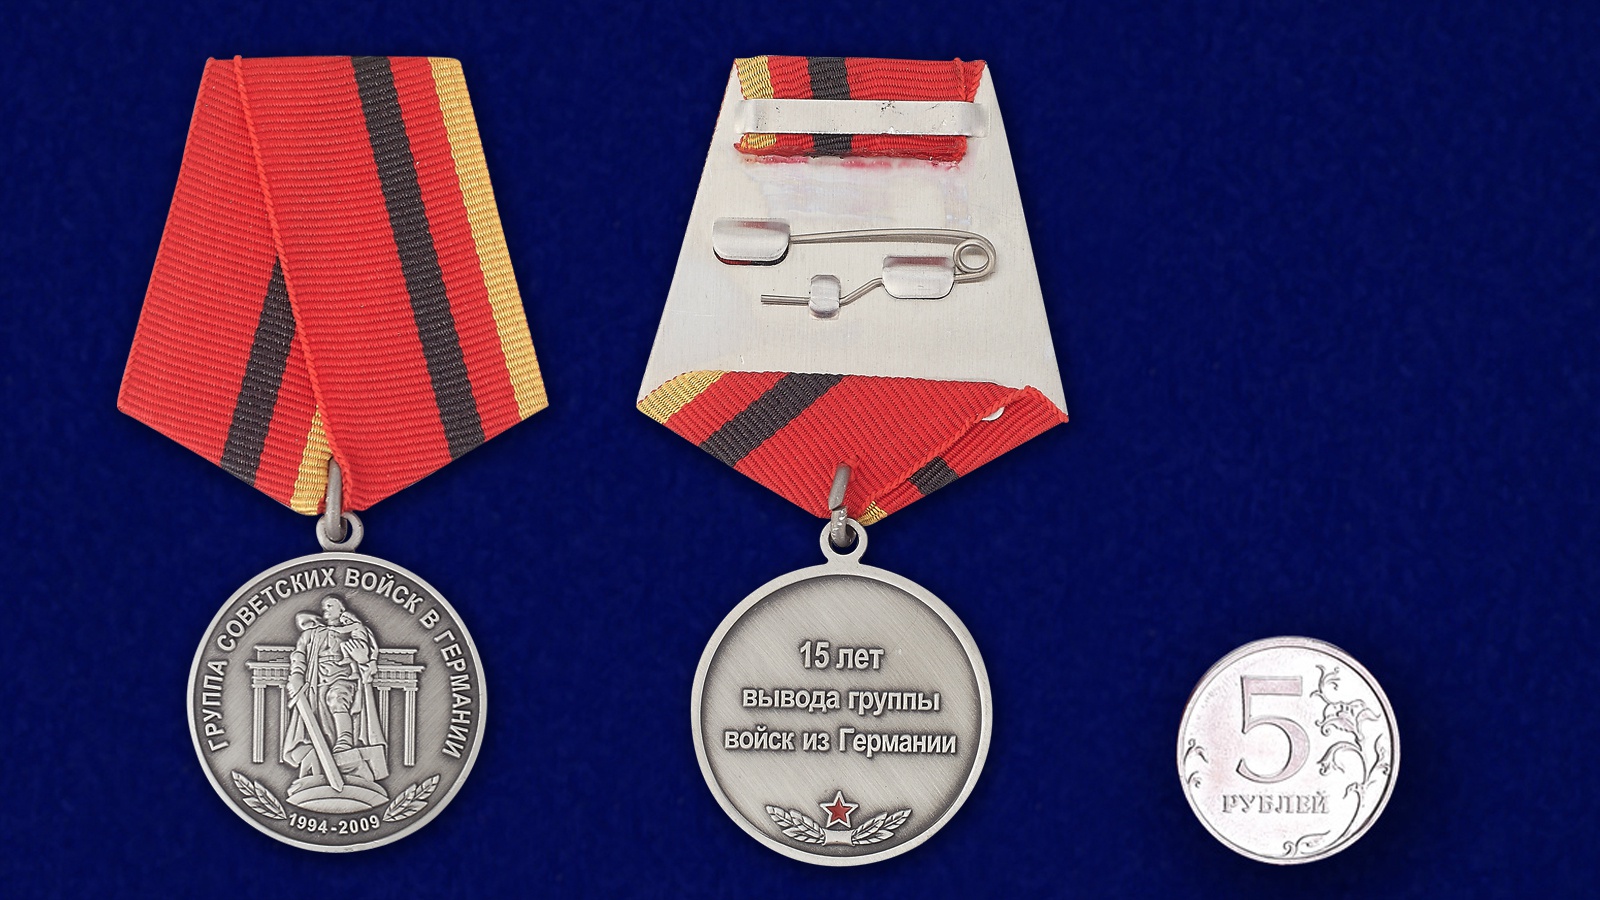 Медаль "15 лет вывода группы войск из Германии" 